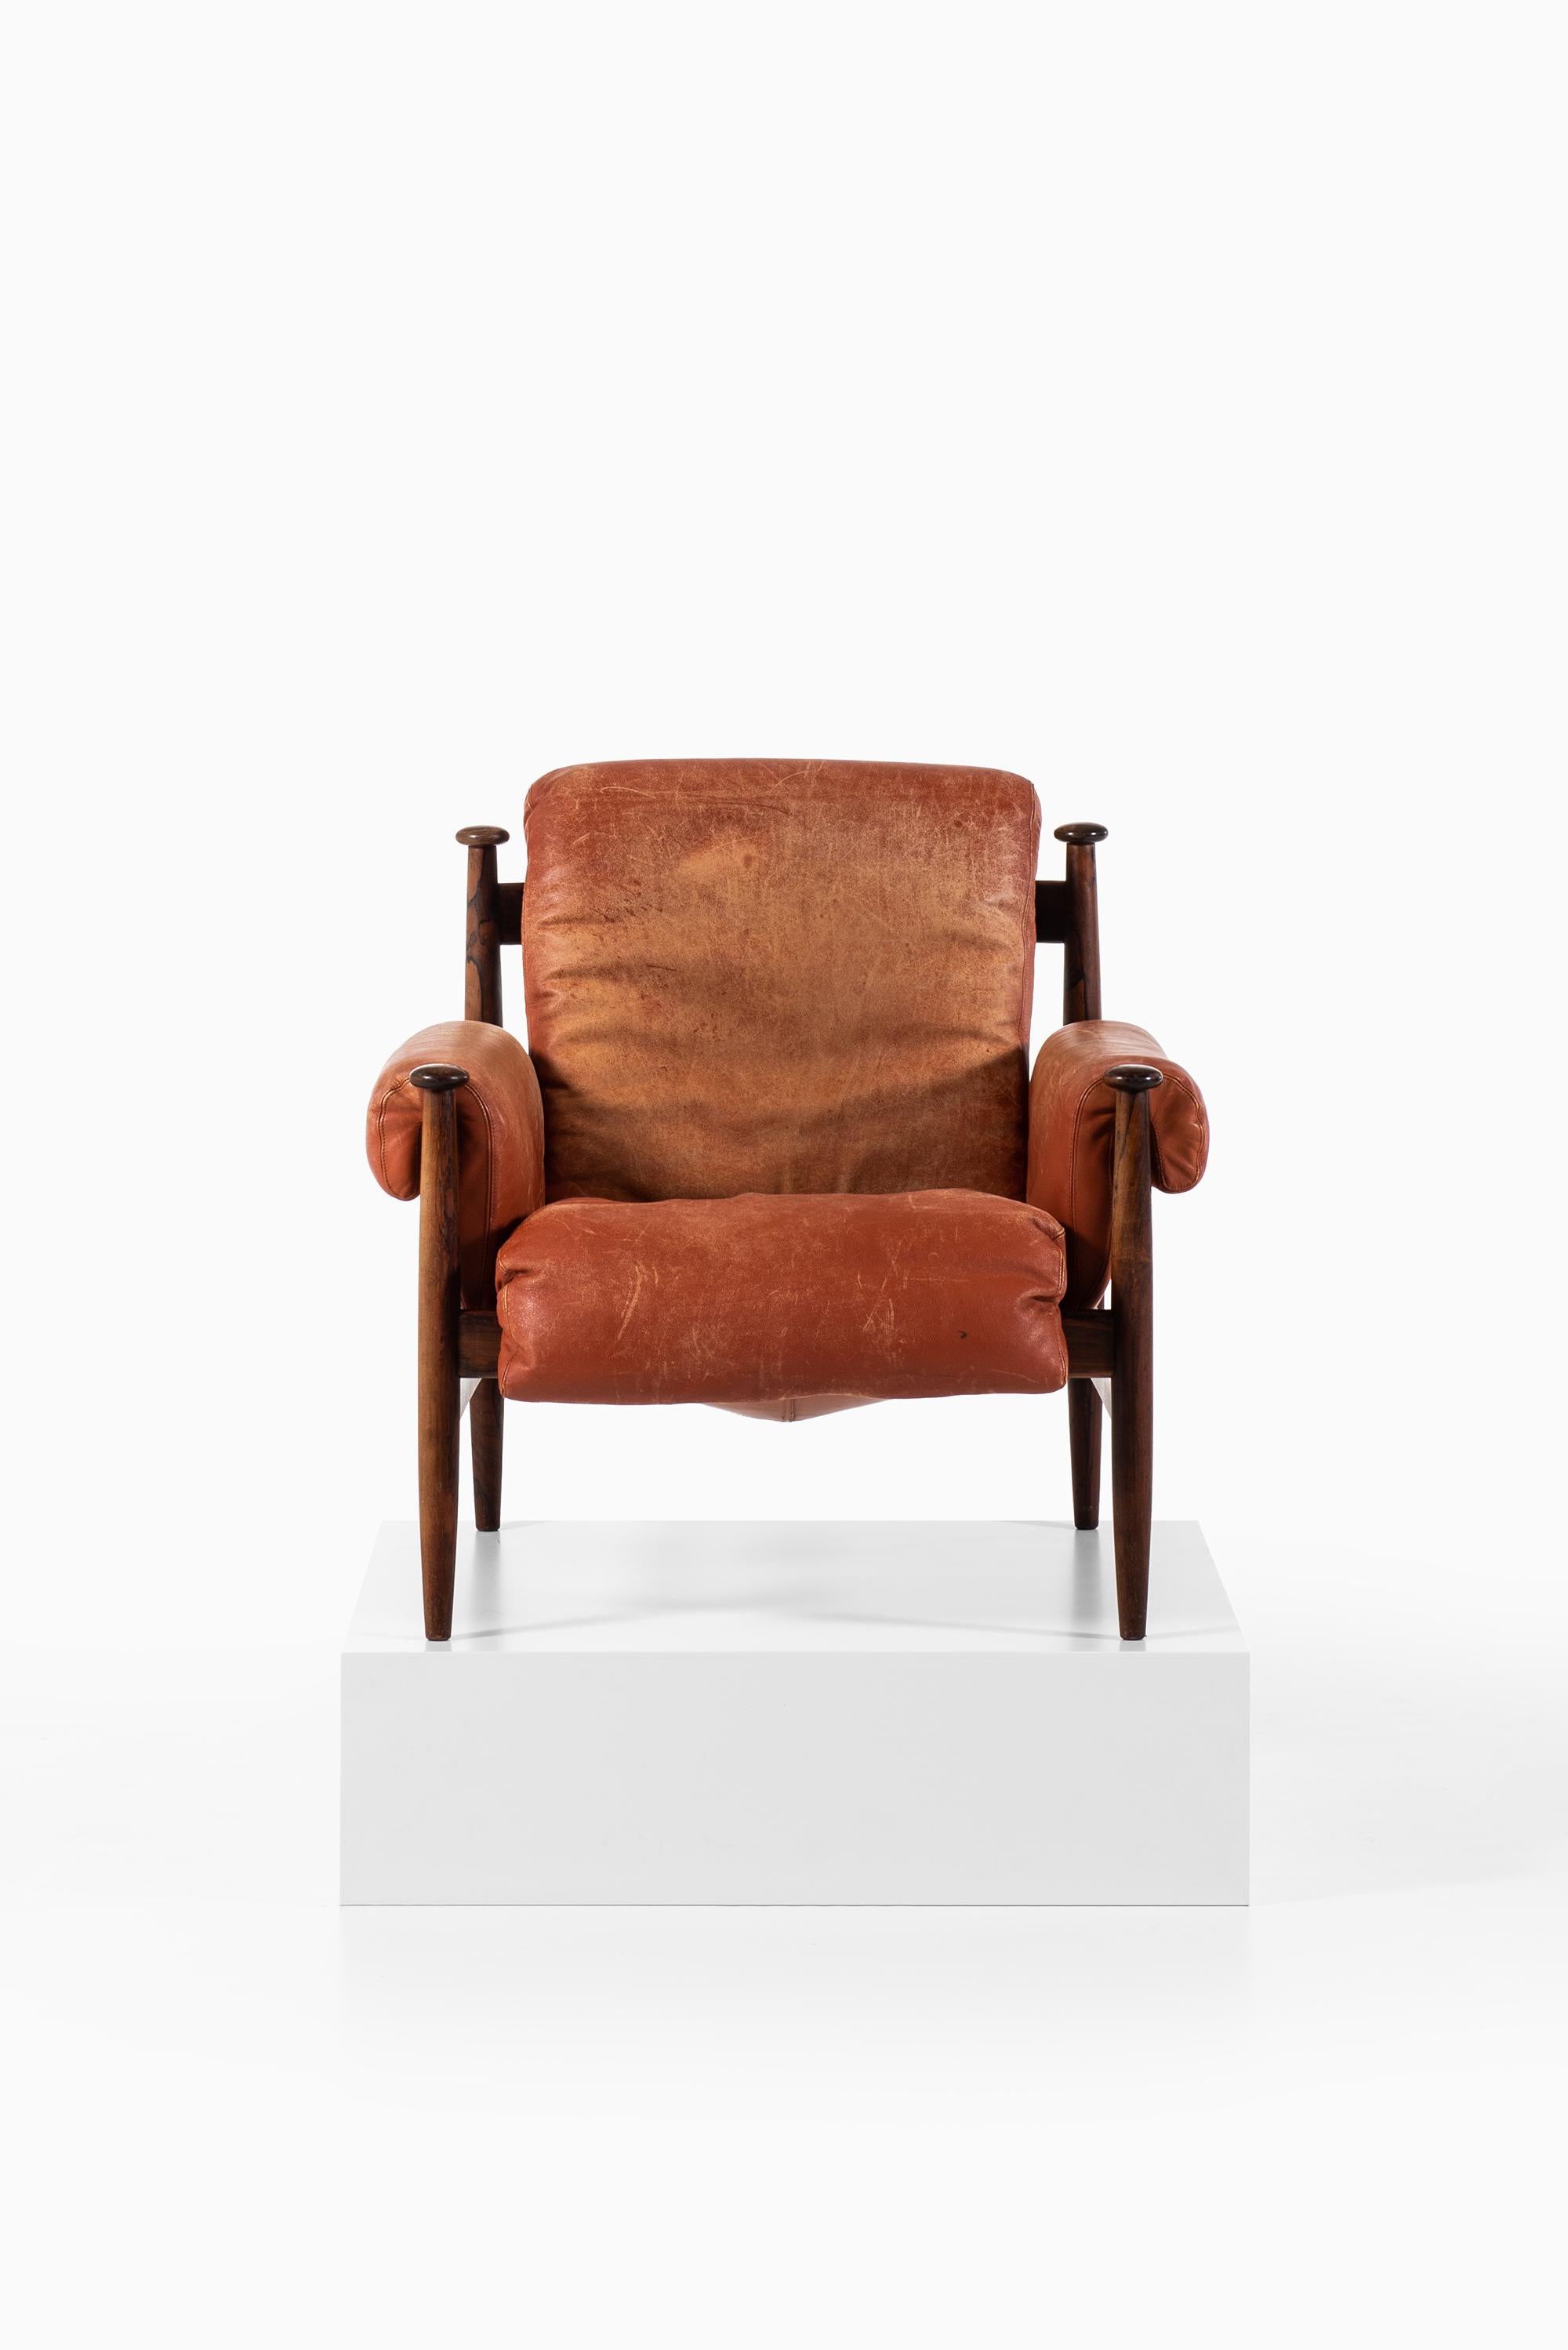 Seltener Sessel Modell Amiral, entworfen von Eric Merthen. Produziert von Ire möbler in Skillingaryd, Schweden.